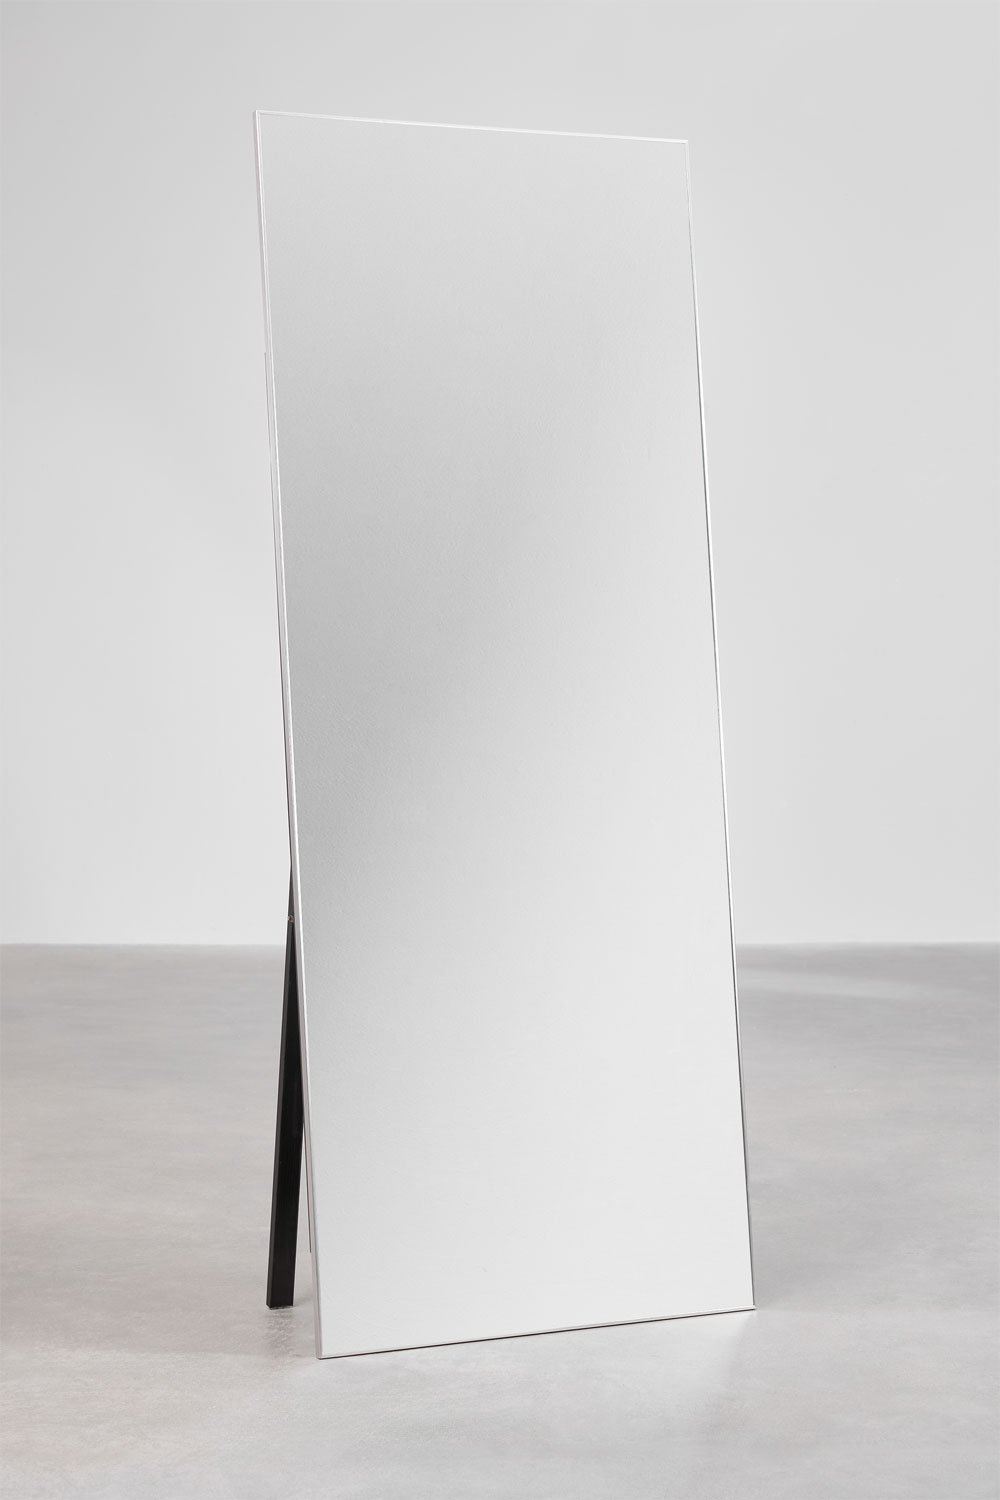 Rechthoekige aluminium staande spiegel (80x200 cm) Ondra, galerij beeld 1